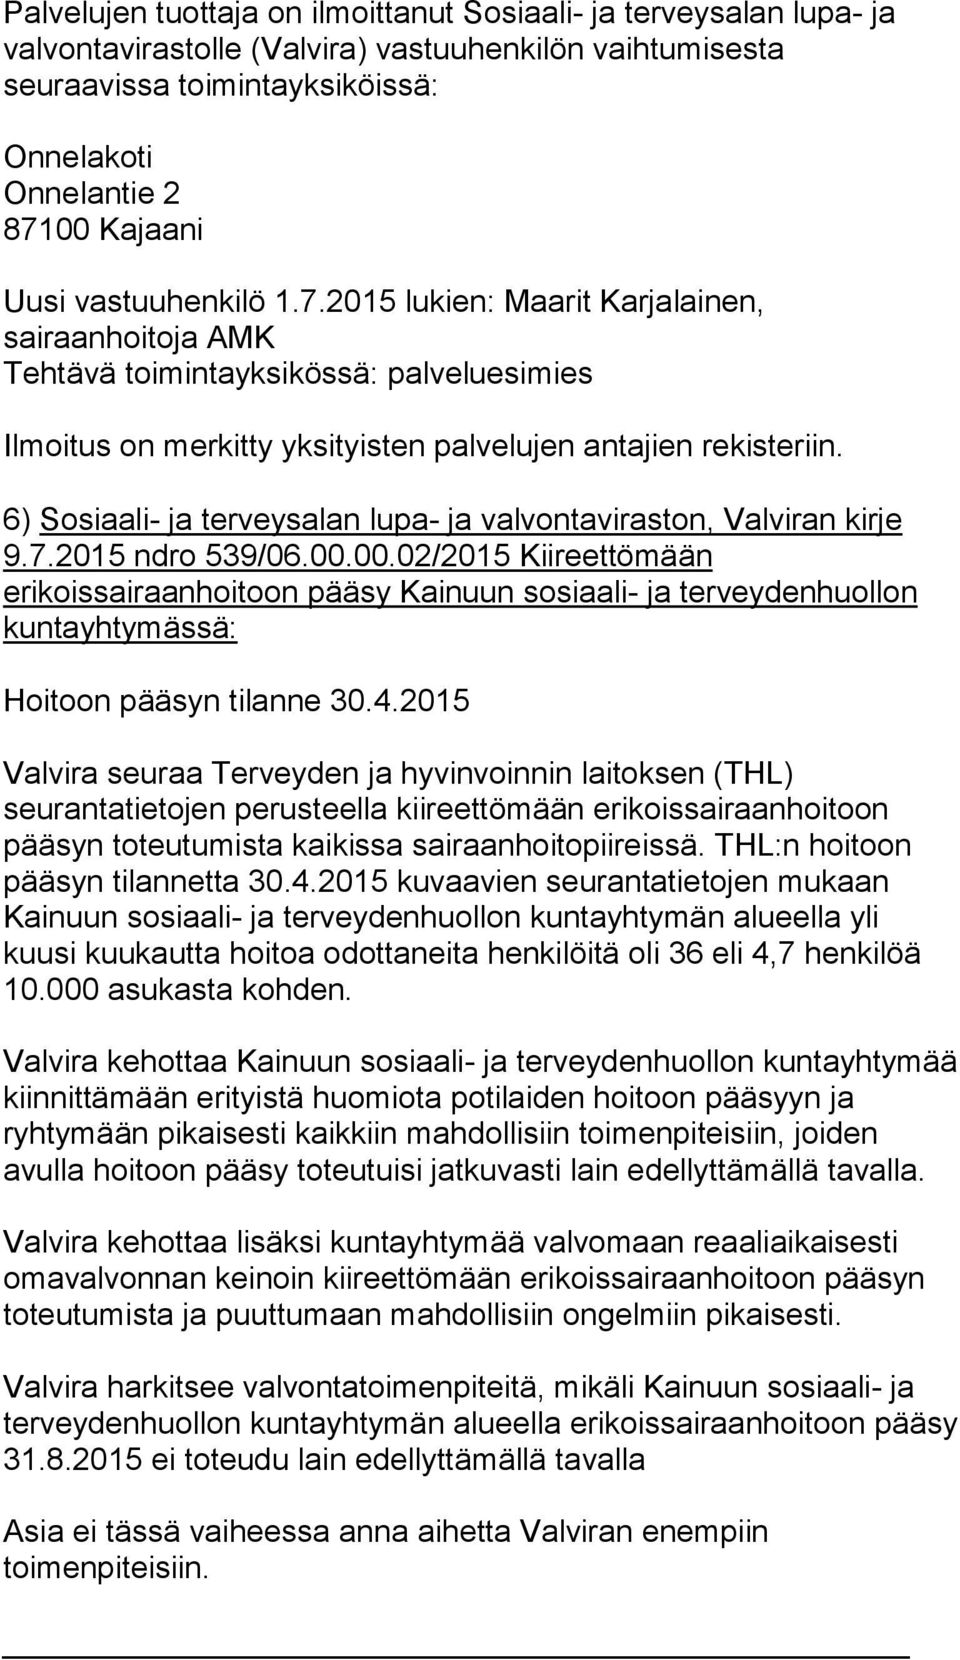 6) Sosiaali- ja terveysalan lupa- ja valvontaviraston, Valviran kirje 9.7.2015 ndro 539/06.00.